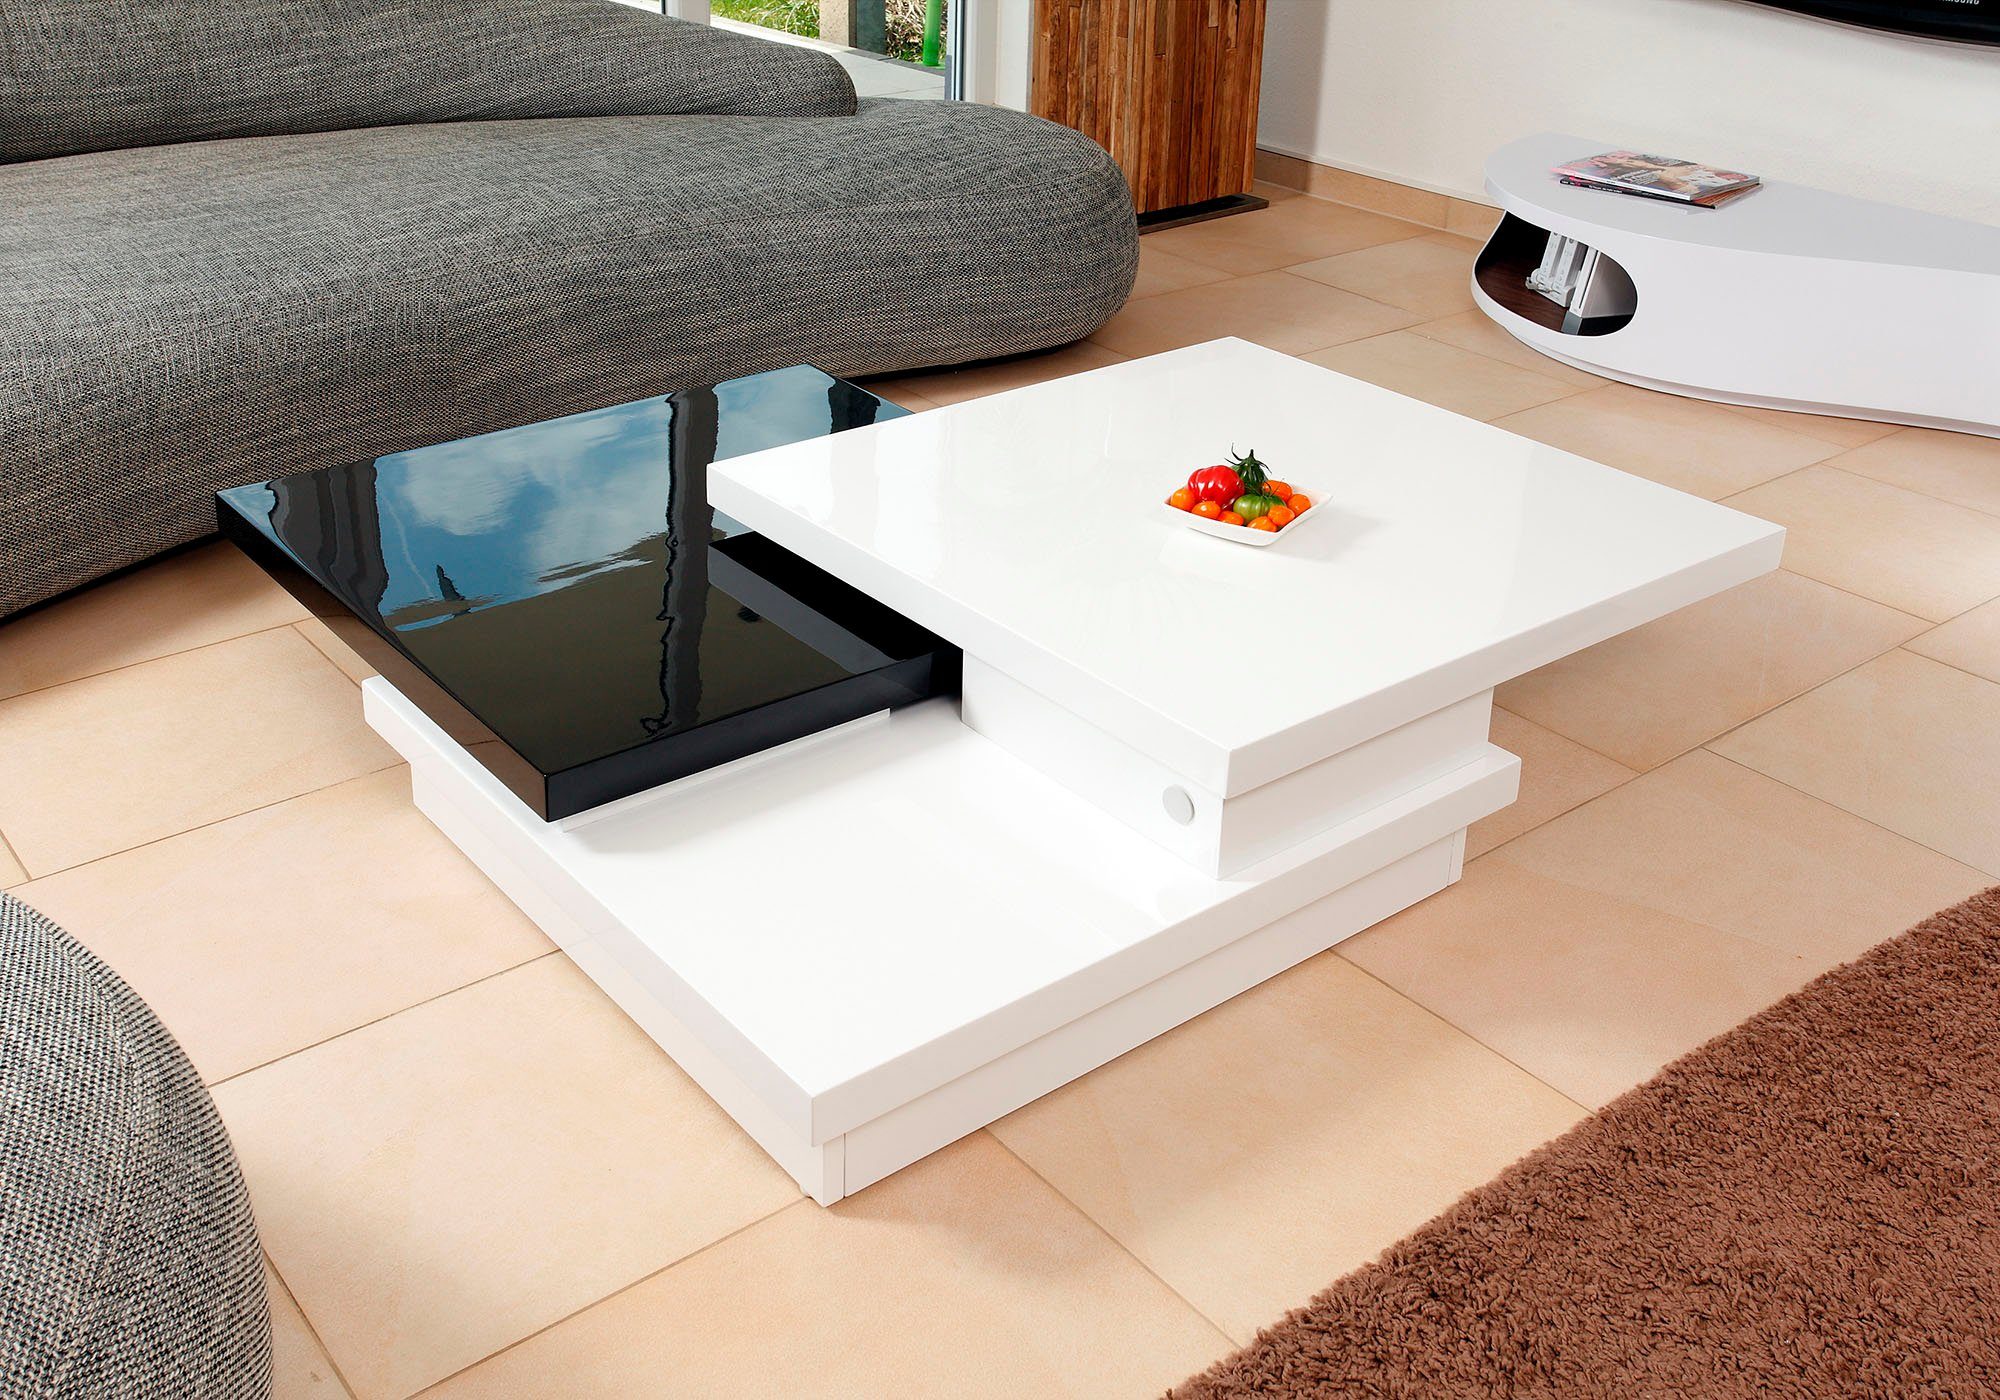 SalesFever Couchtisch, Tischplatte drehbar um schwarz/weiß 360°